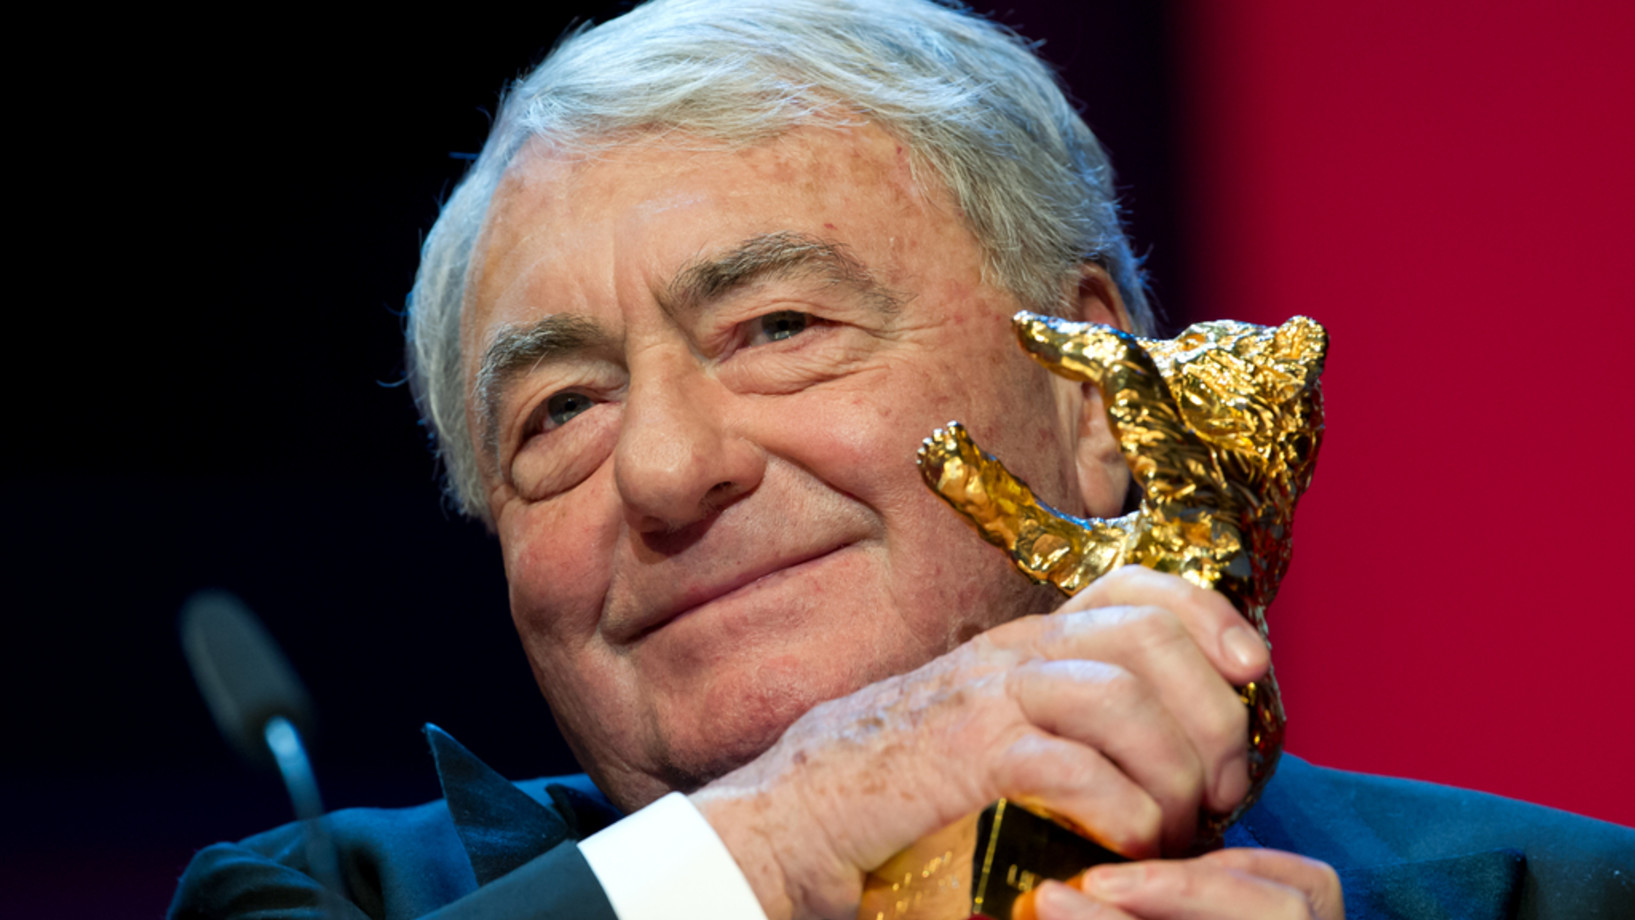 Claude Lanzmann wird am 14. Feburar 2013 bei der Berlinale mit dem Goldenen Ehrenbären ausgezeichnet. (Foto: Keystone/DPA/Sven Hoppe)